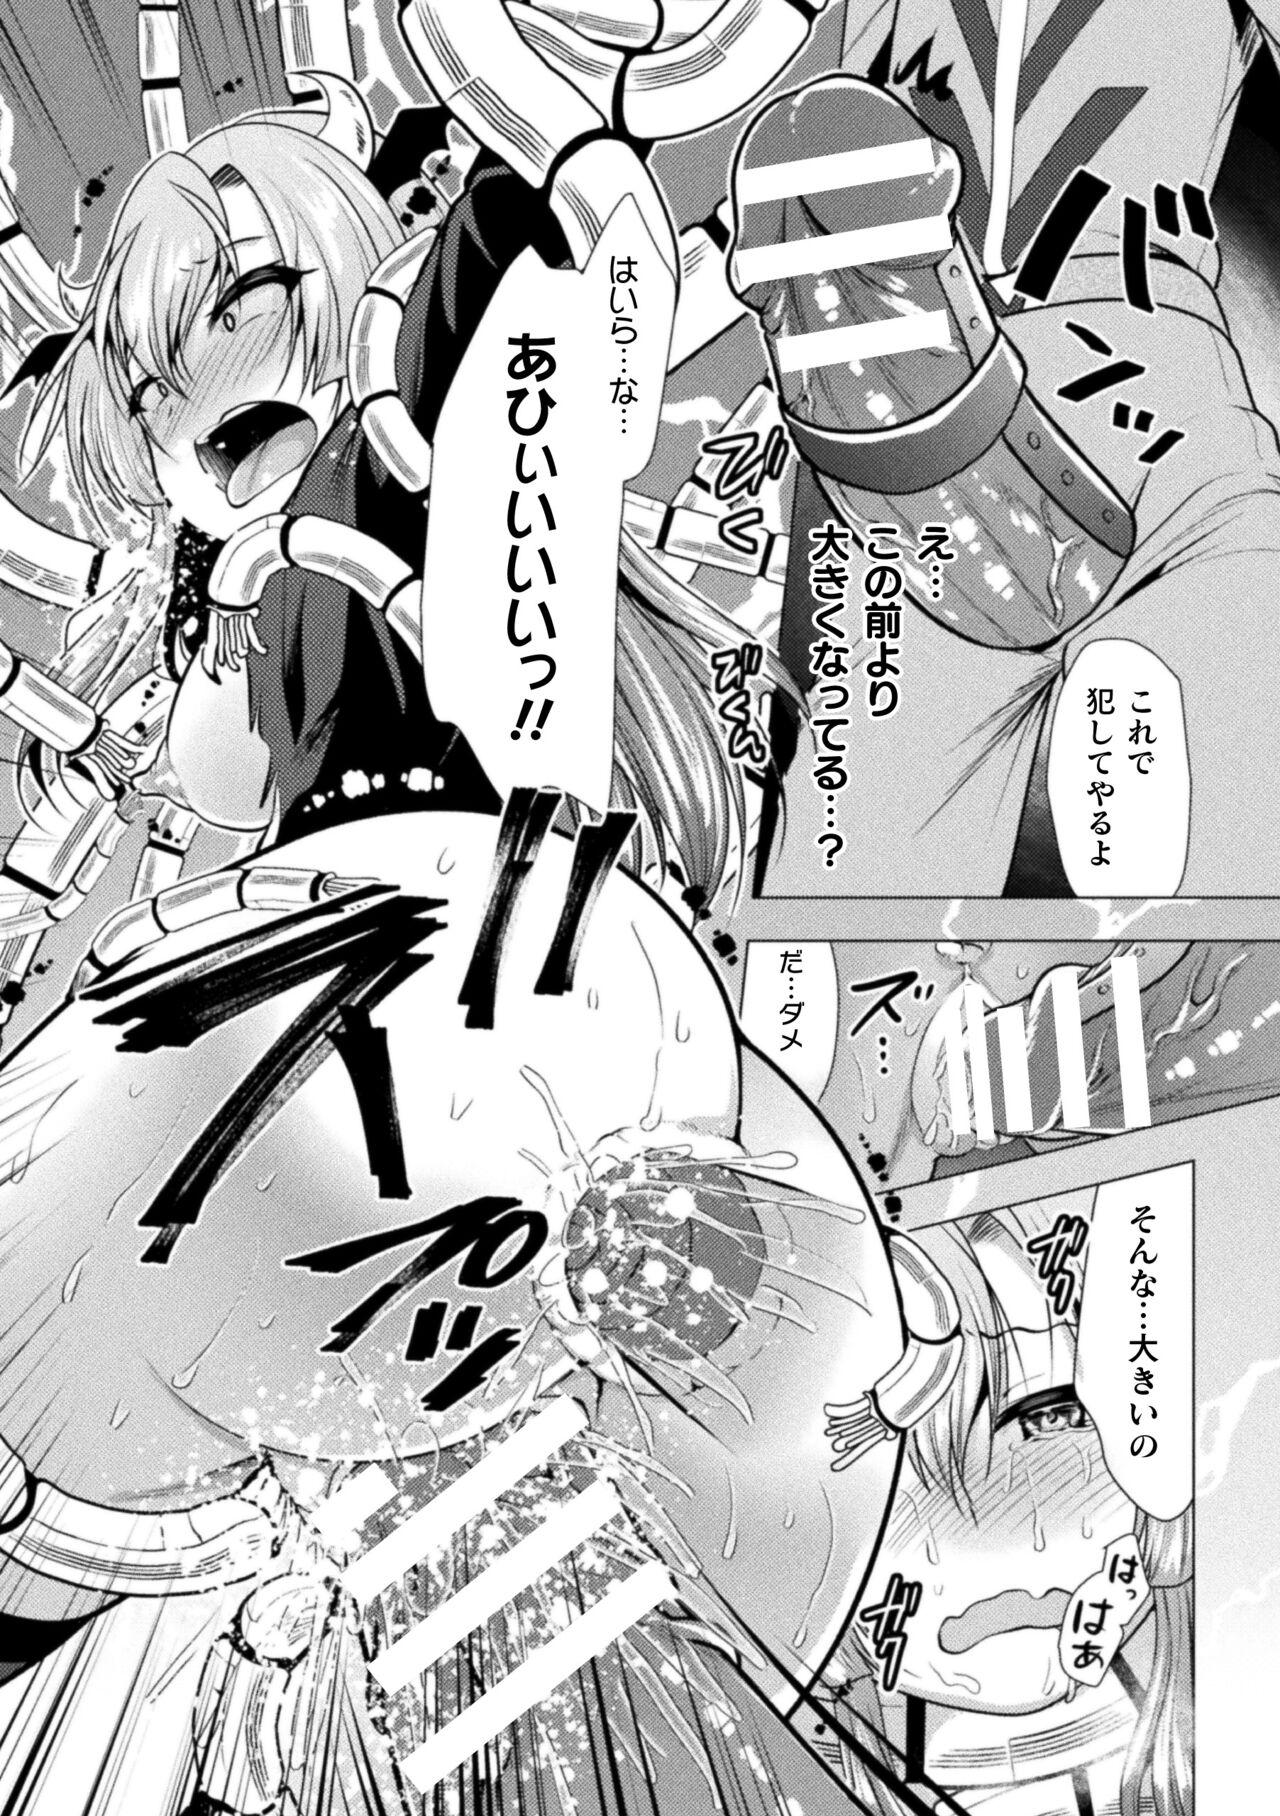 2D Comic Magazine Mesugaki Henshin Heroine Kikaikan Seisai Hijou no Wakarase Machine de Renzoku Loli Acme Vol. 3 17